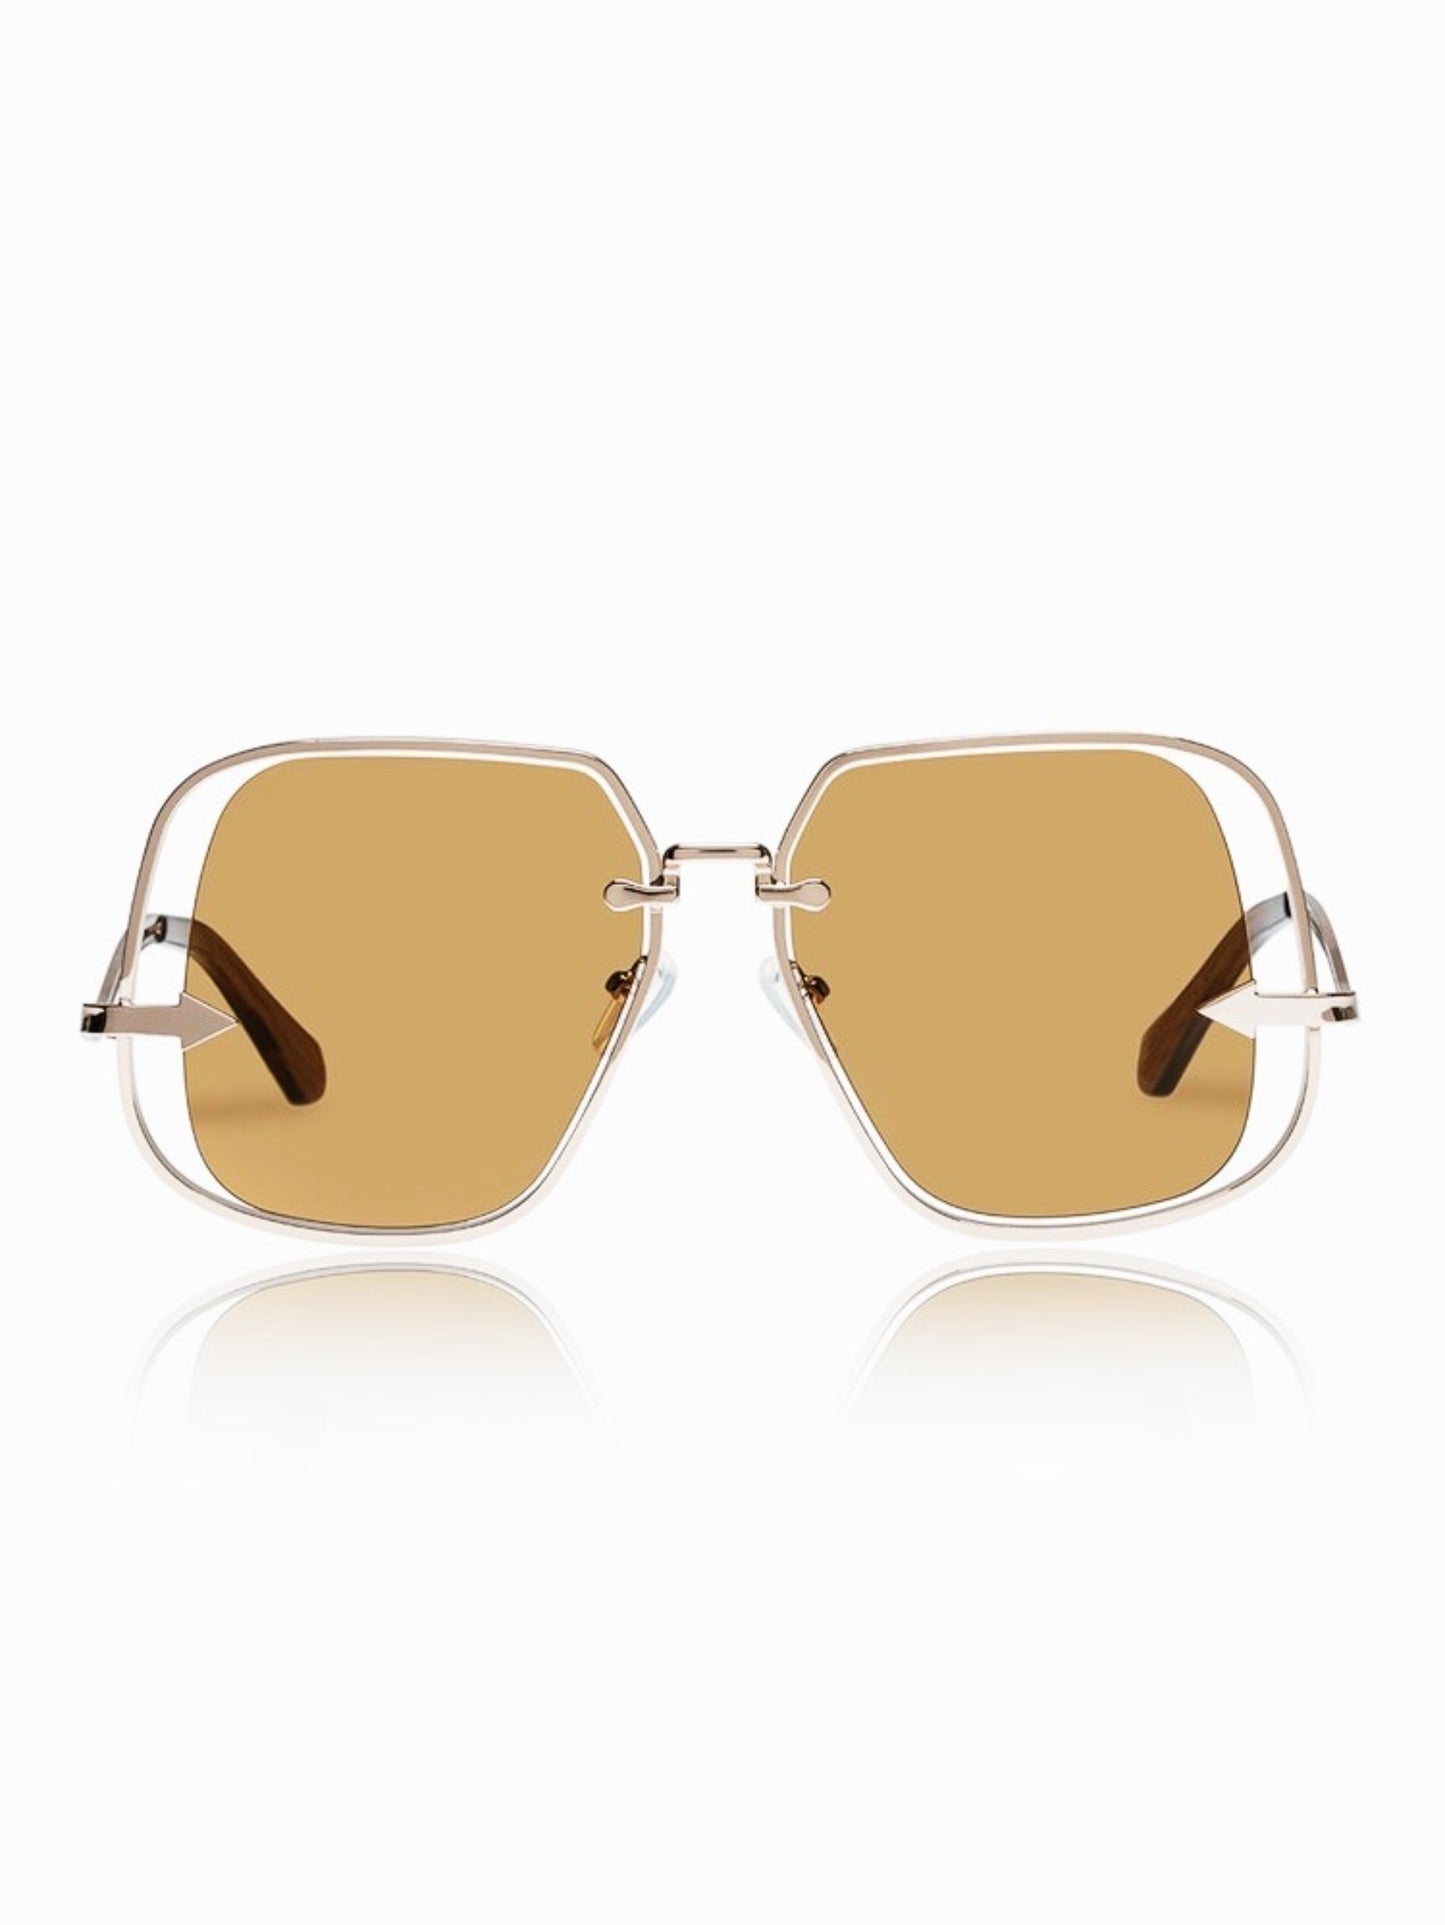 Karen Walker Eyewear Sunglasses / Hypatia / Dark Gold